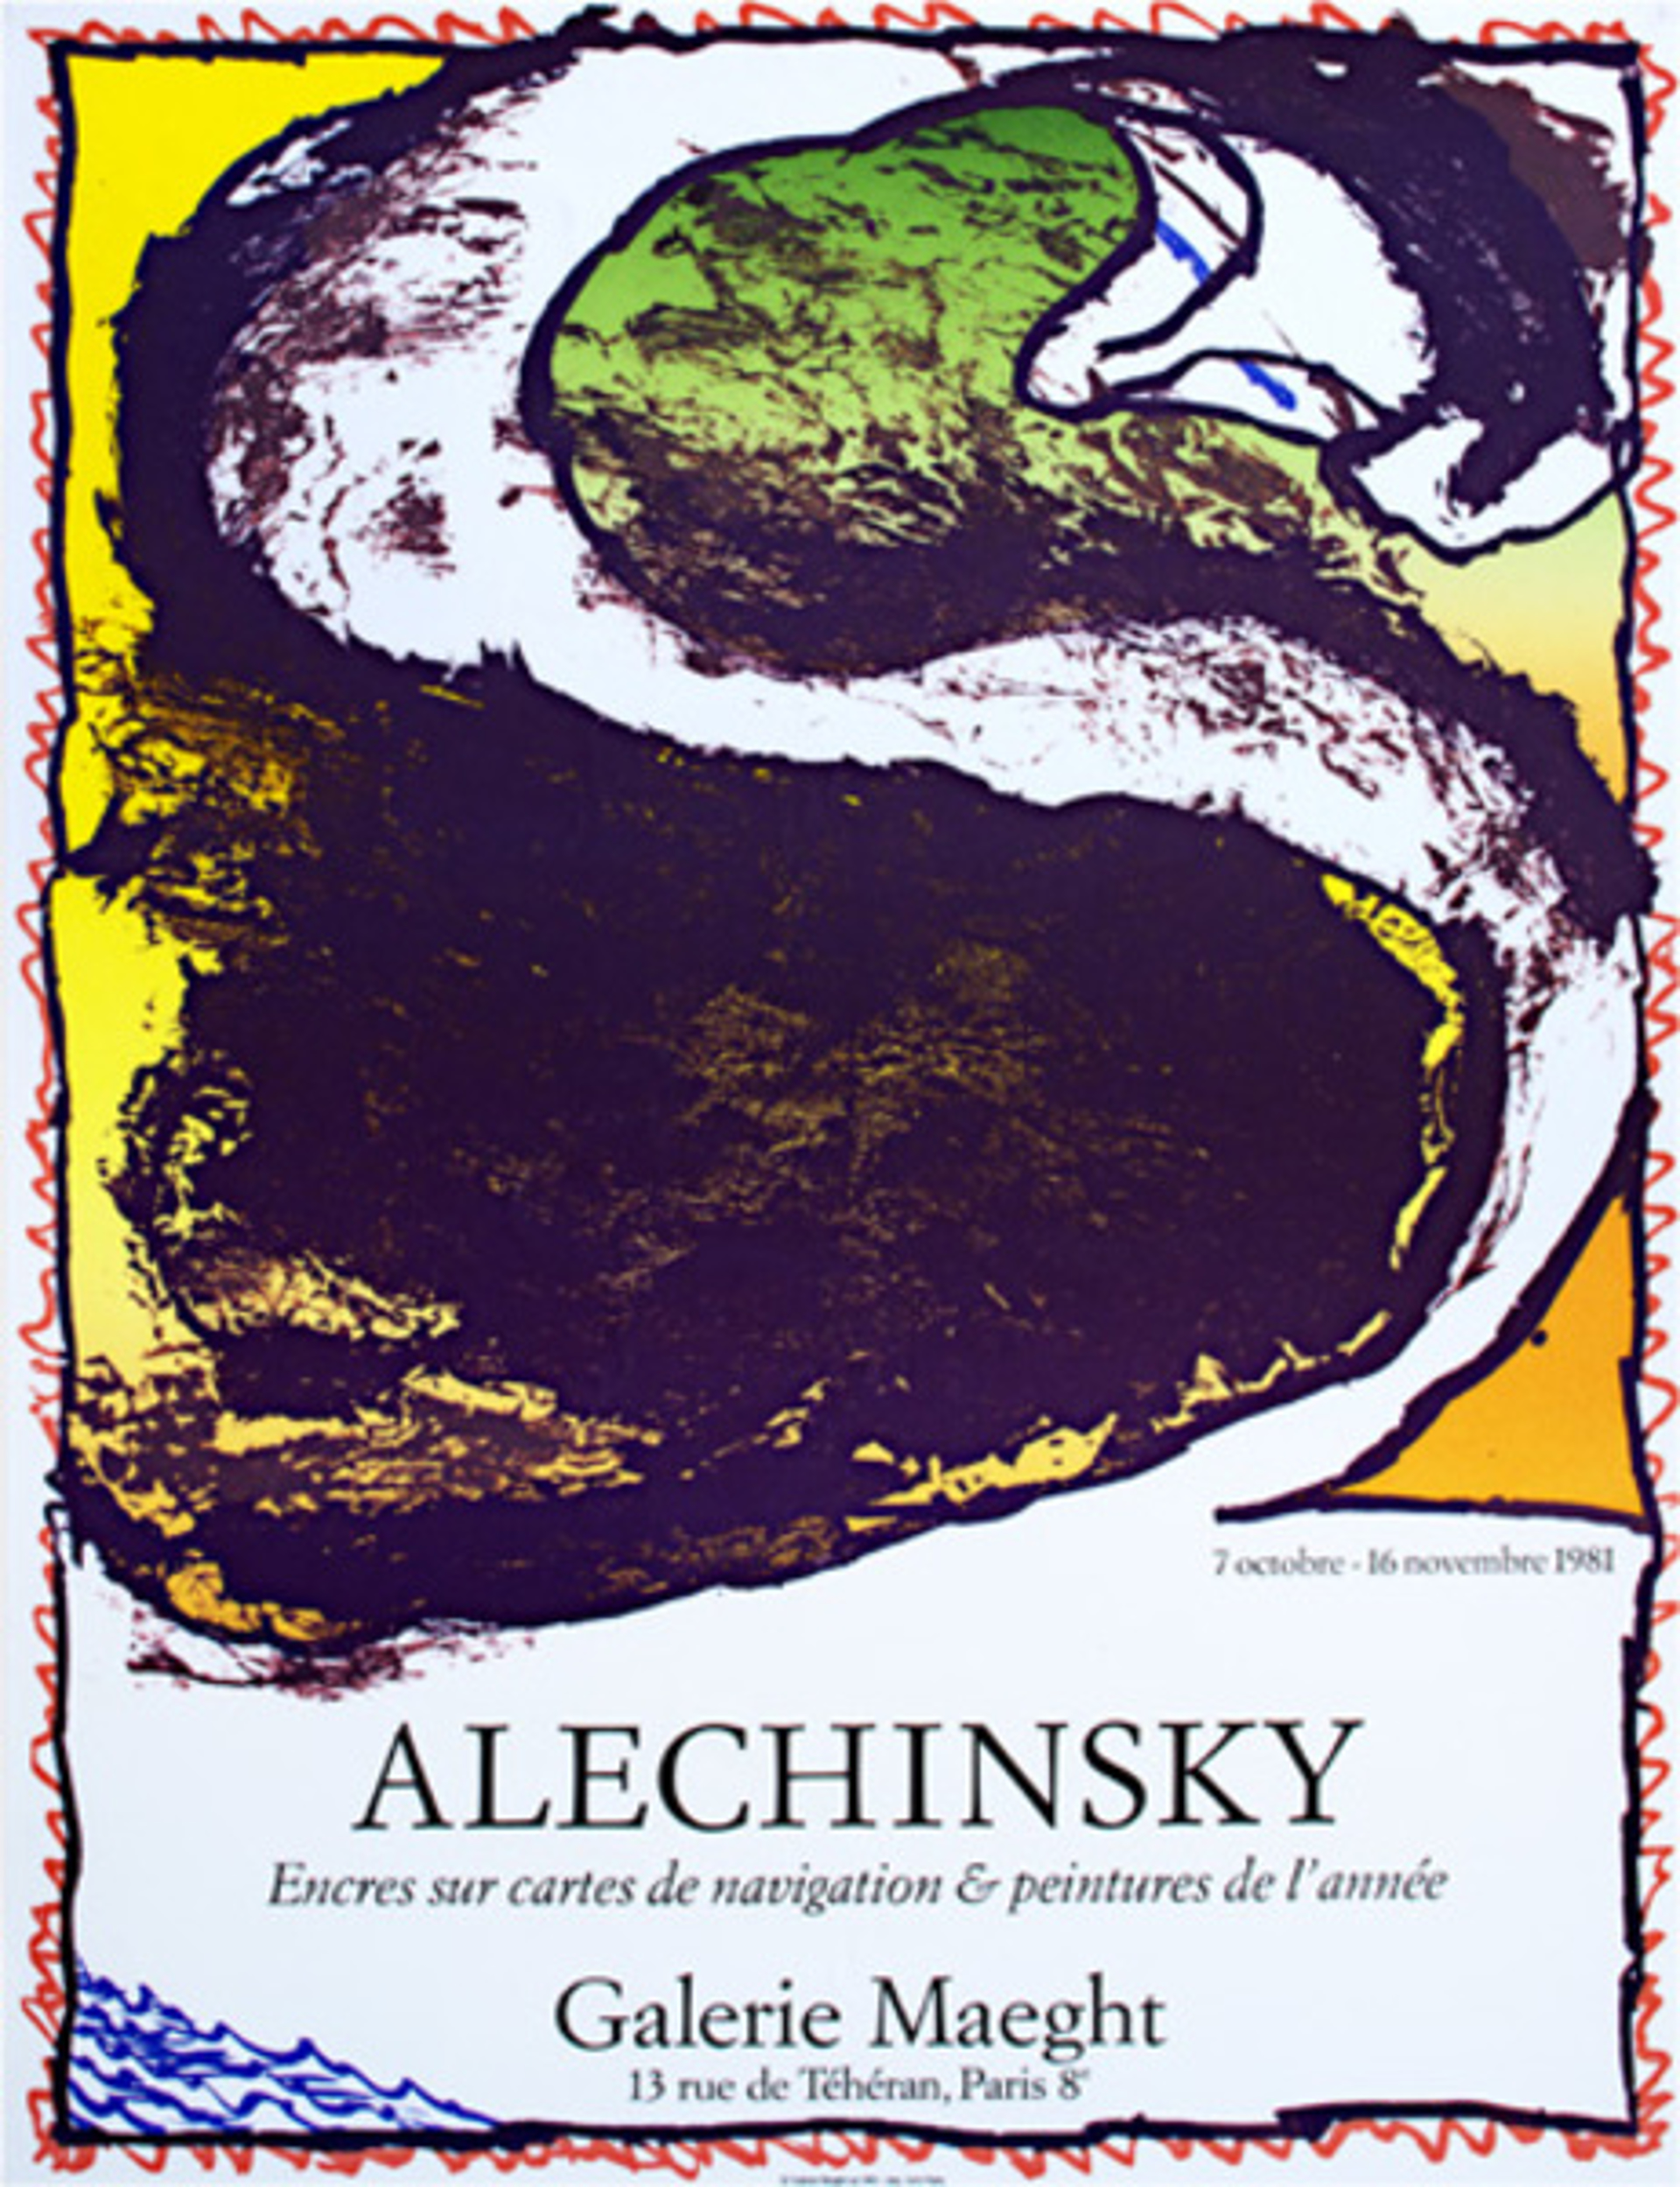 Encres sur cartes de navigation & peintures de l'annee by Pierre Alechinsky